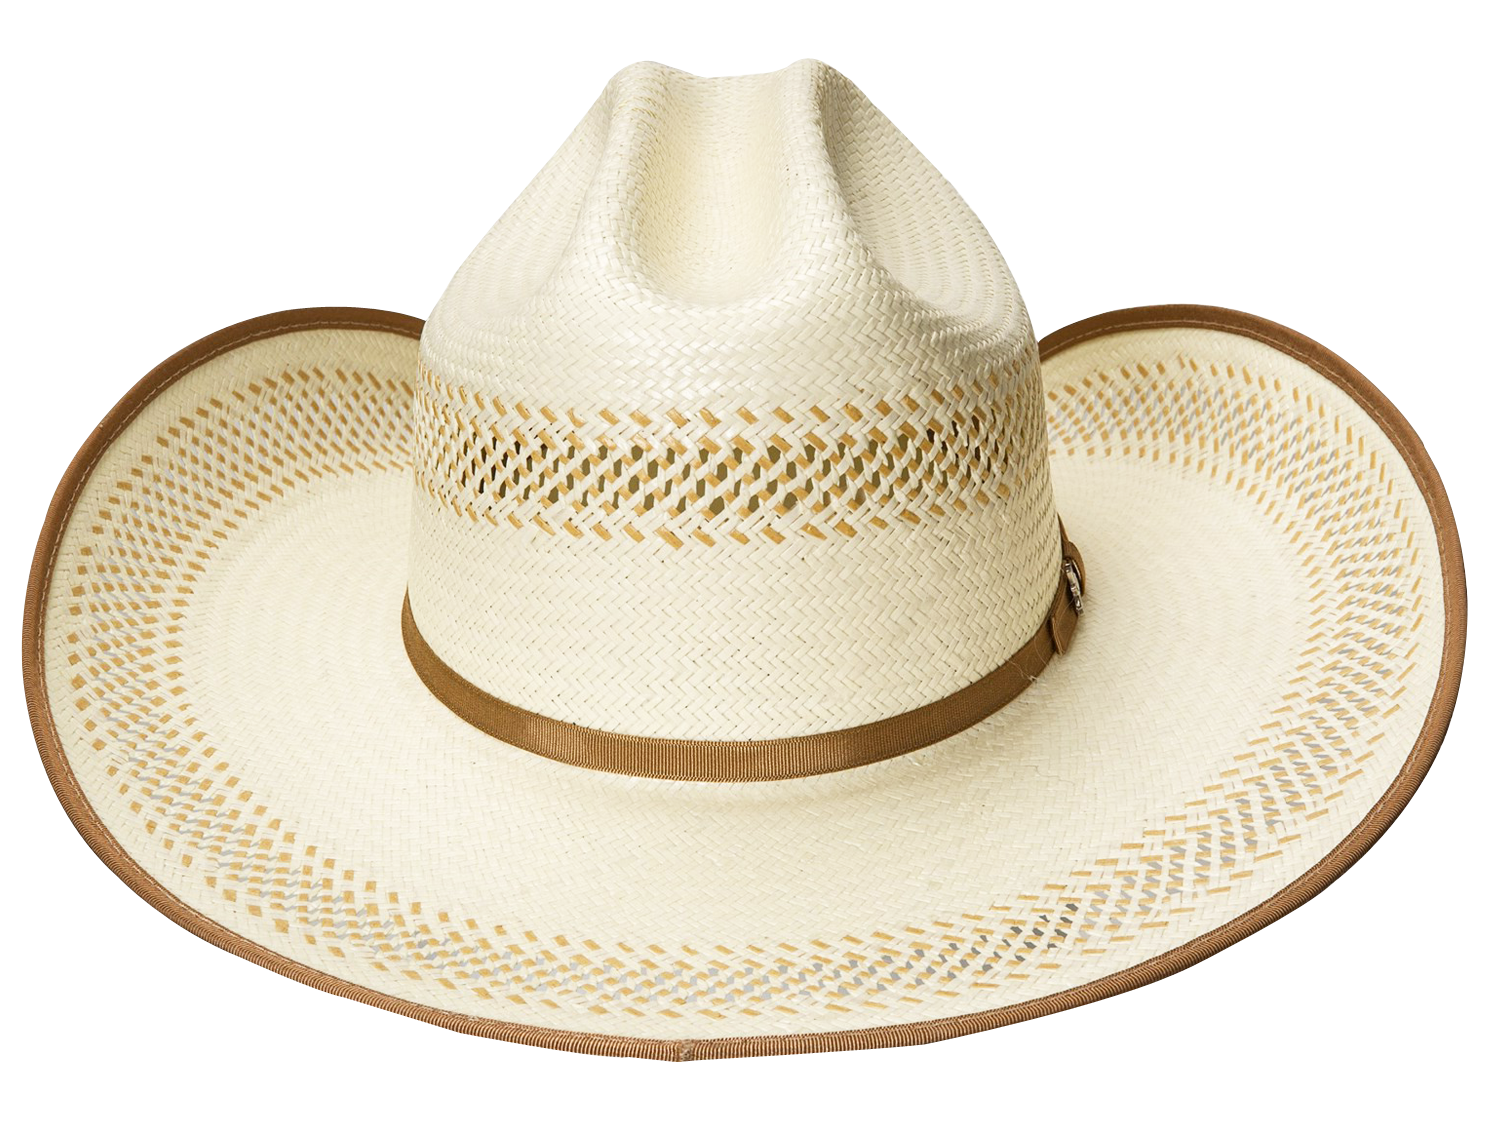 Cowboy hat transparent image s png